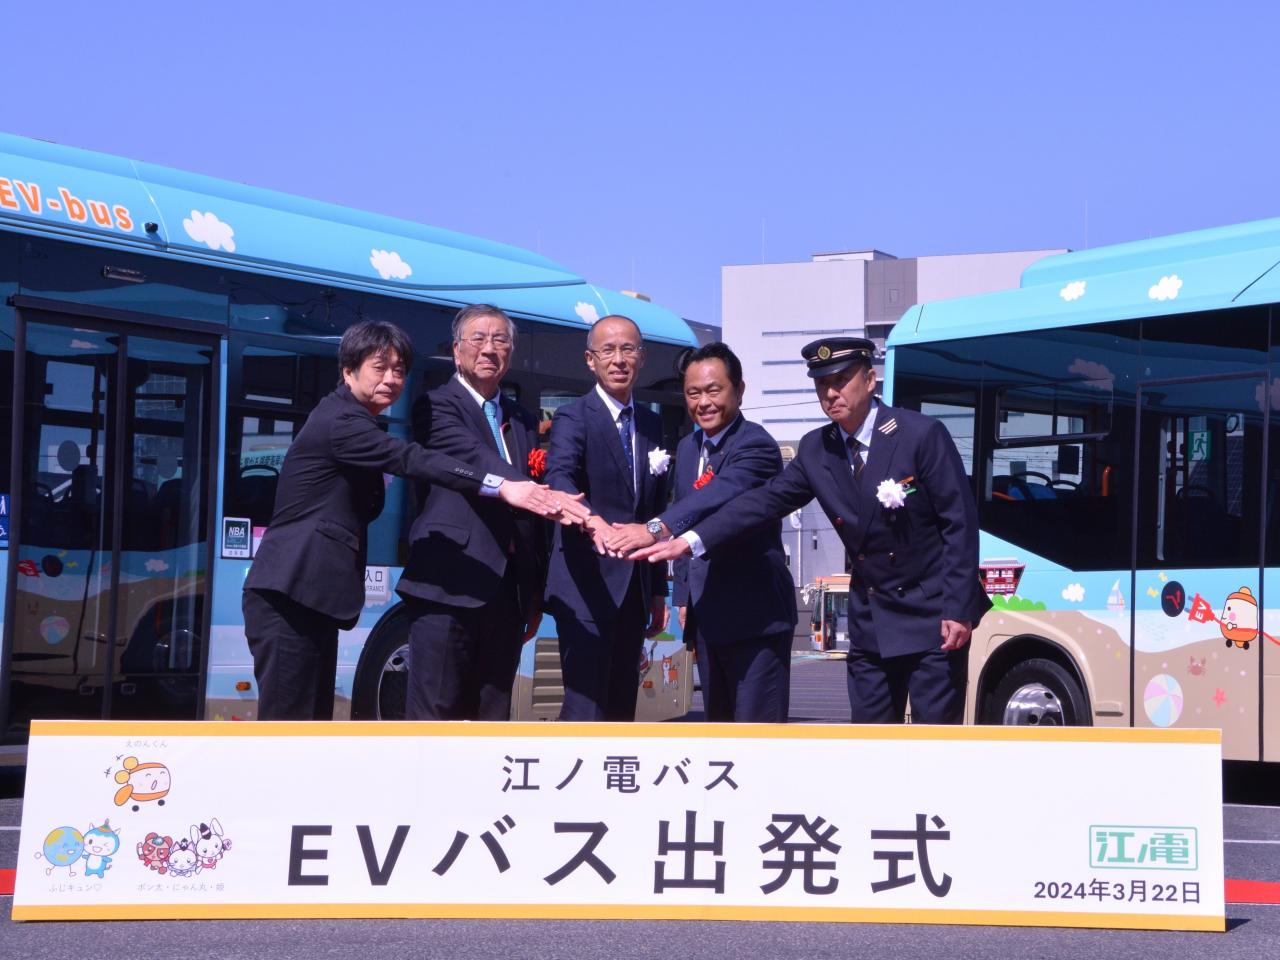 はじめよう！地球にやさしい移動を江ノ電バスで ～藤沢・鎌倉地域初 EVバスの路線運行開始～